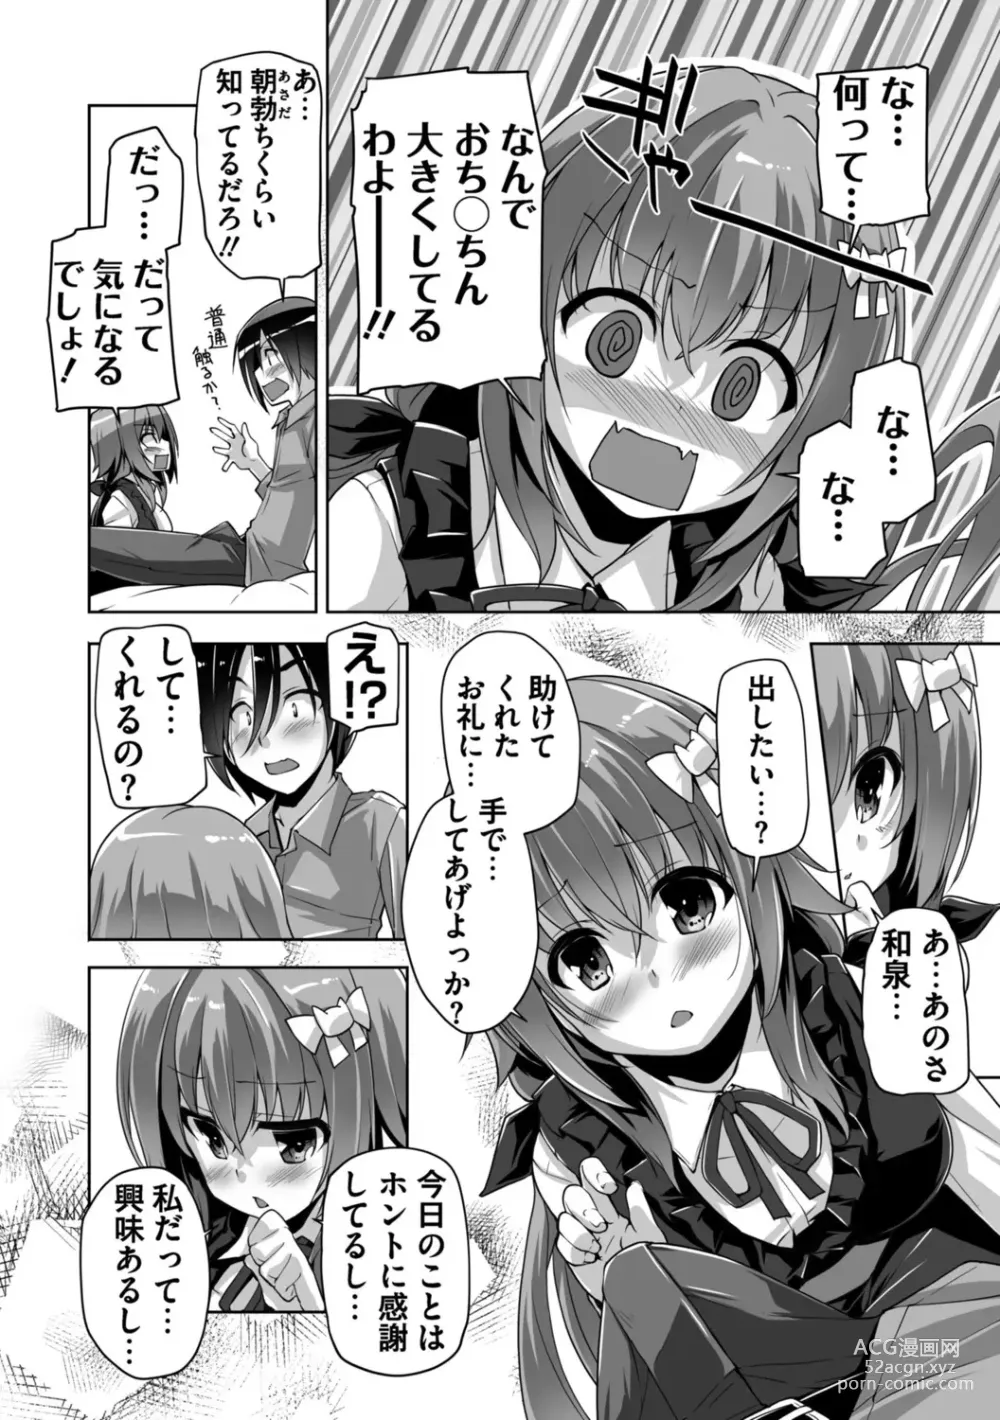 Page 8 of manga Hamidashi Creative Adult Edition